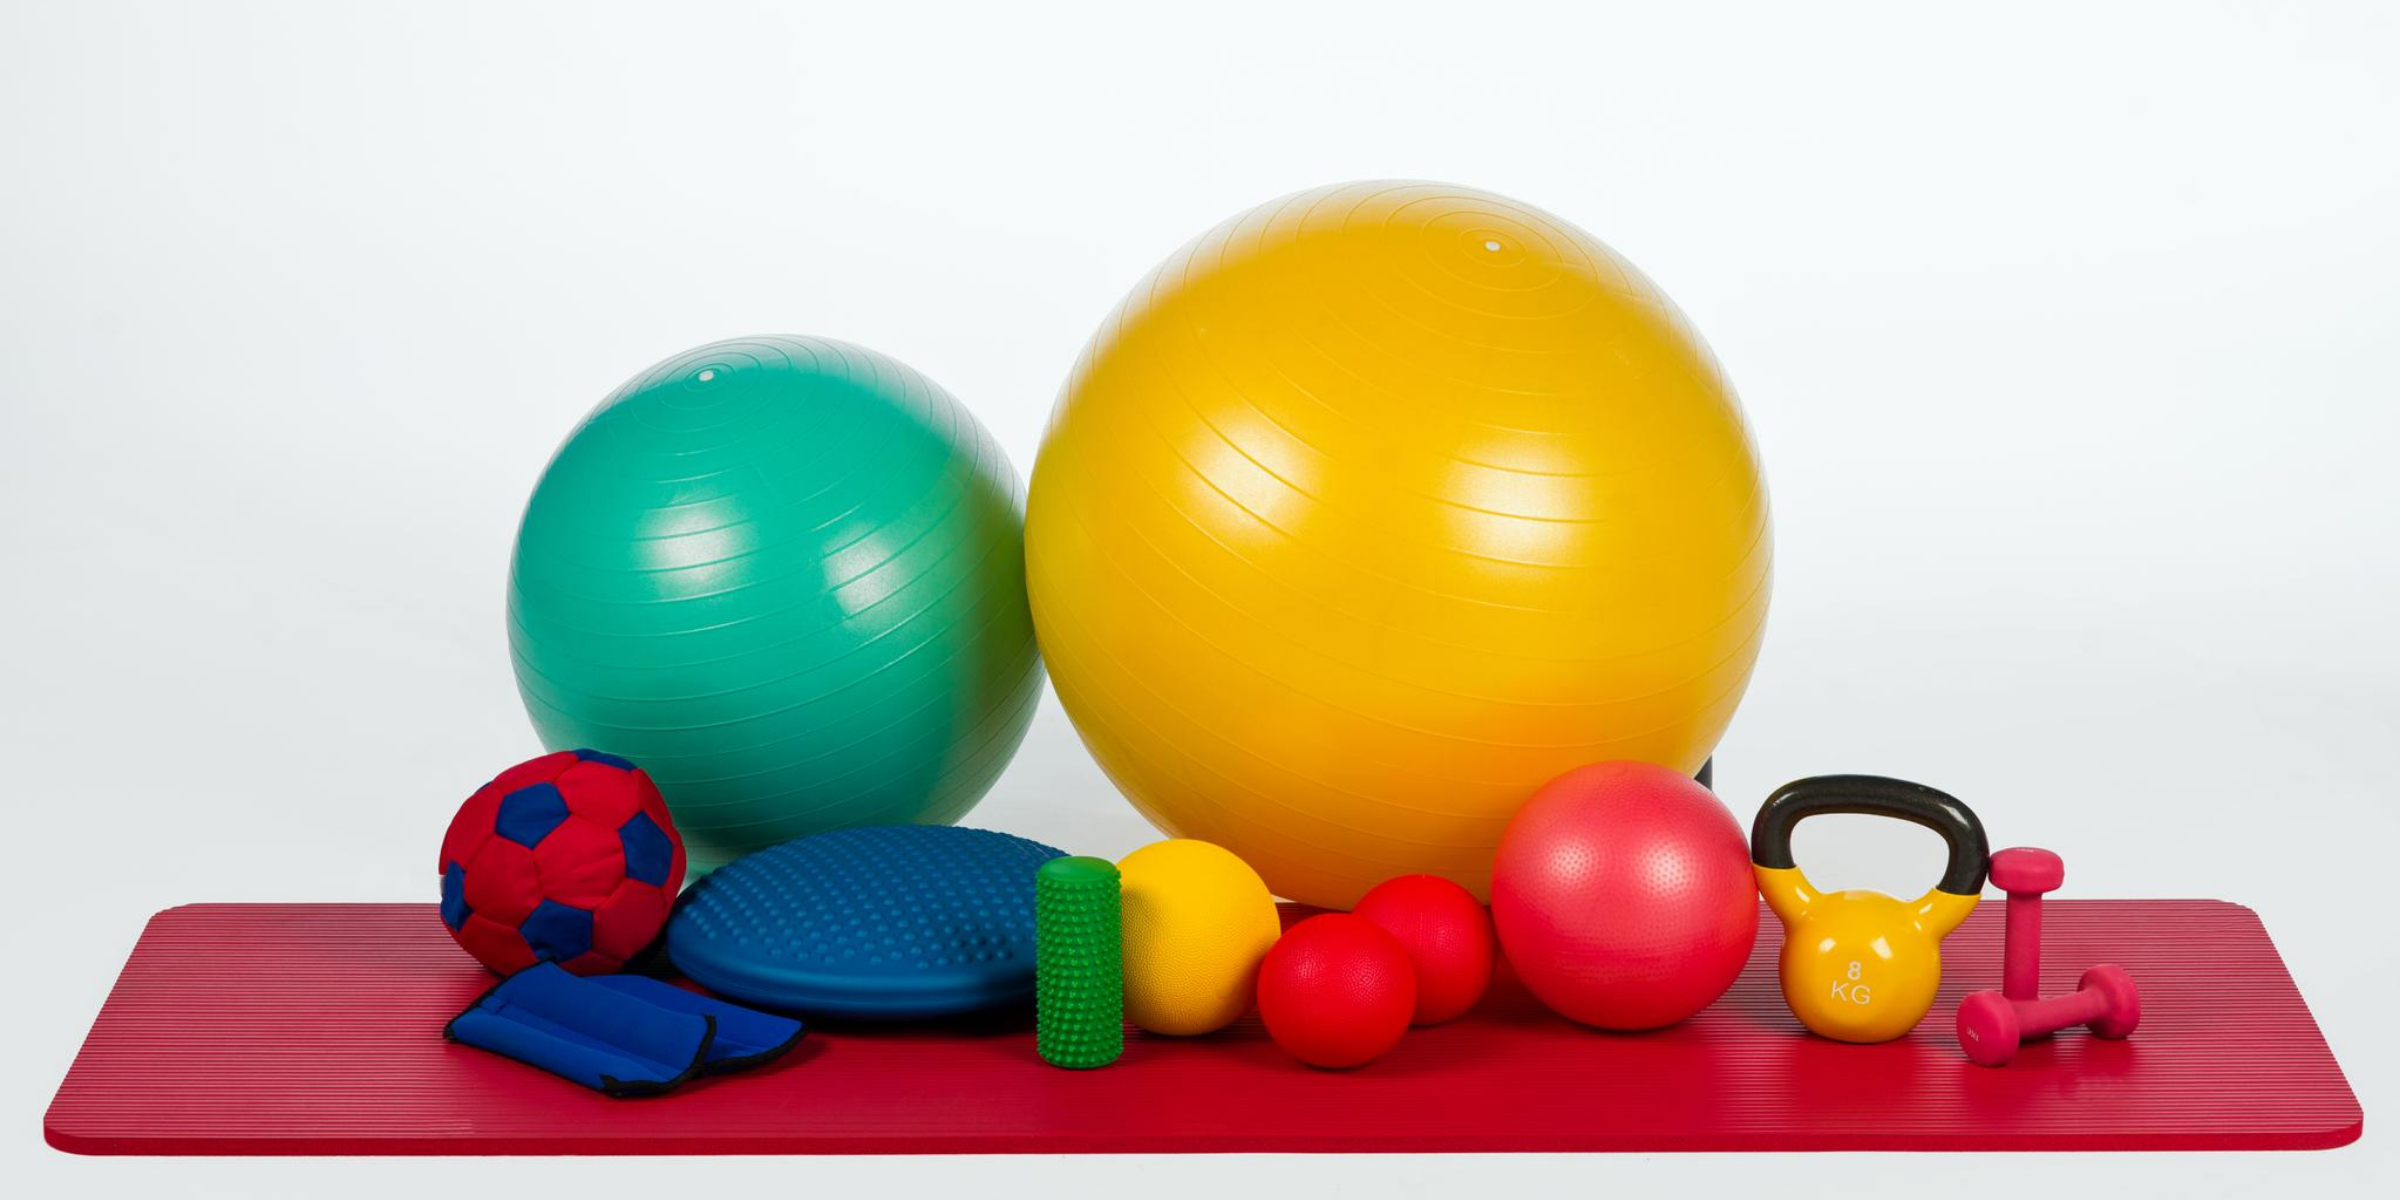 Keywords: exercise balls, mat